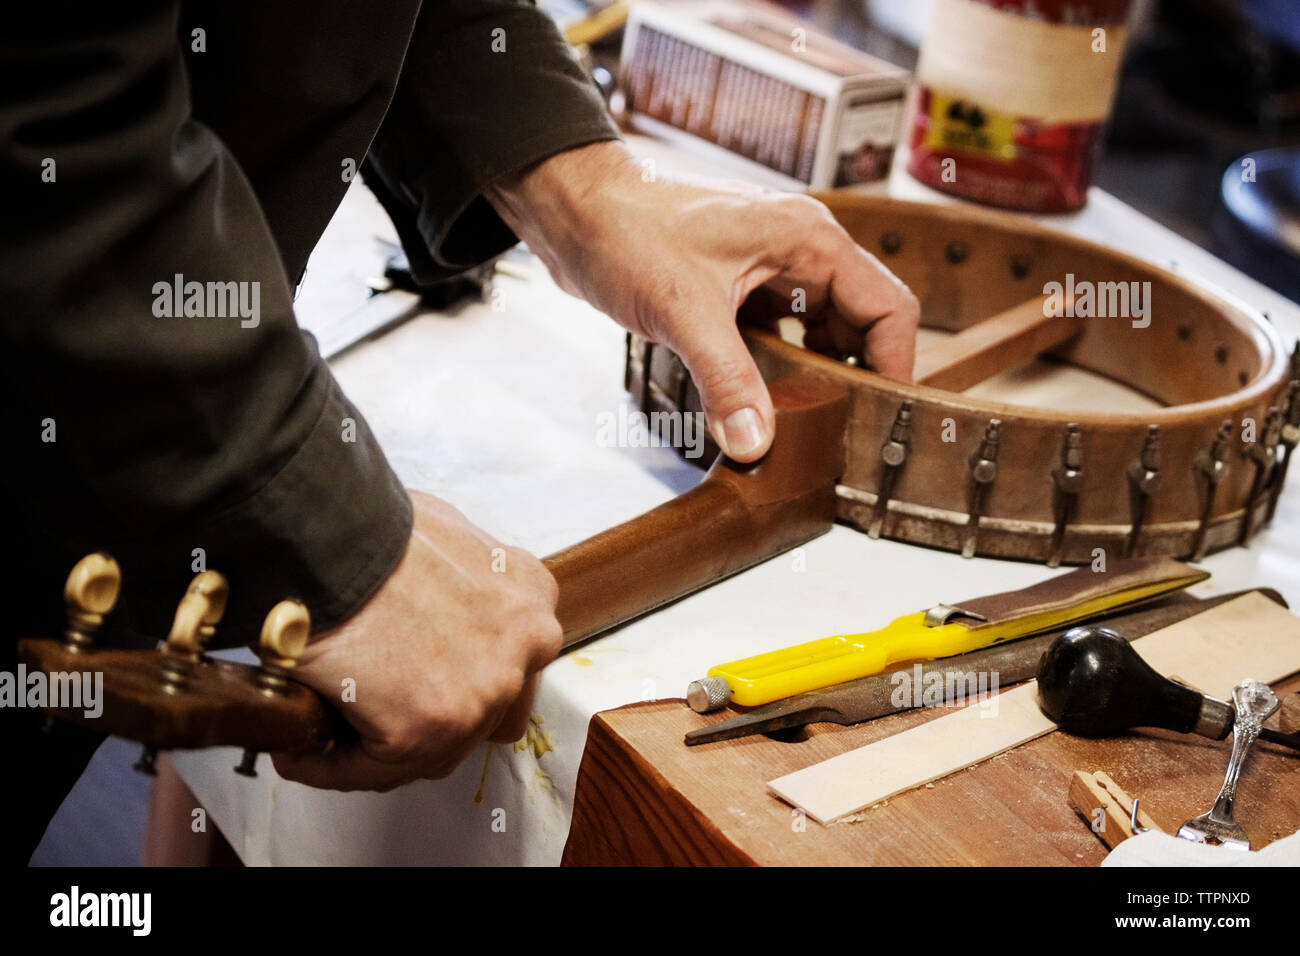 Immagine ritagliata dell'uomo facendo attrezzature musicali sulla tavola in officina Foto Stock